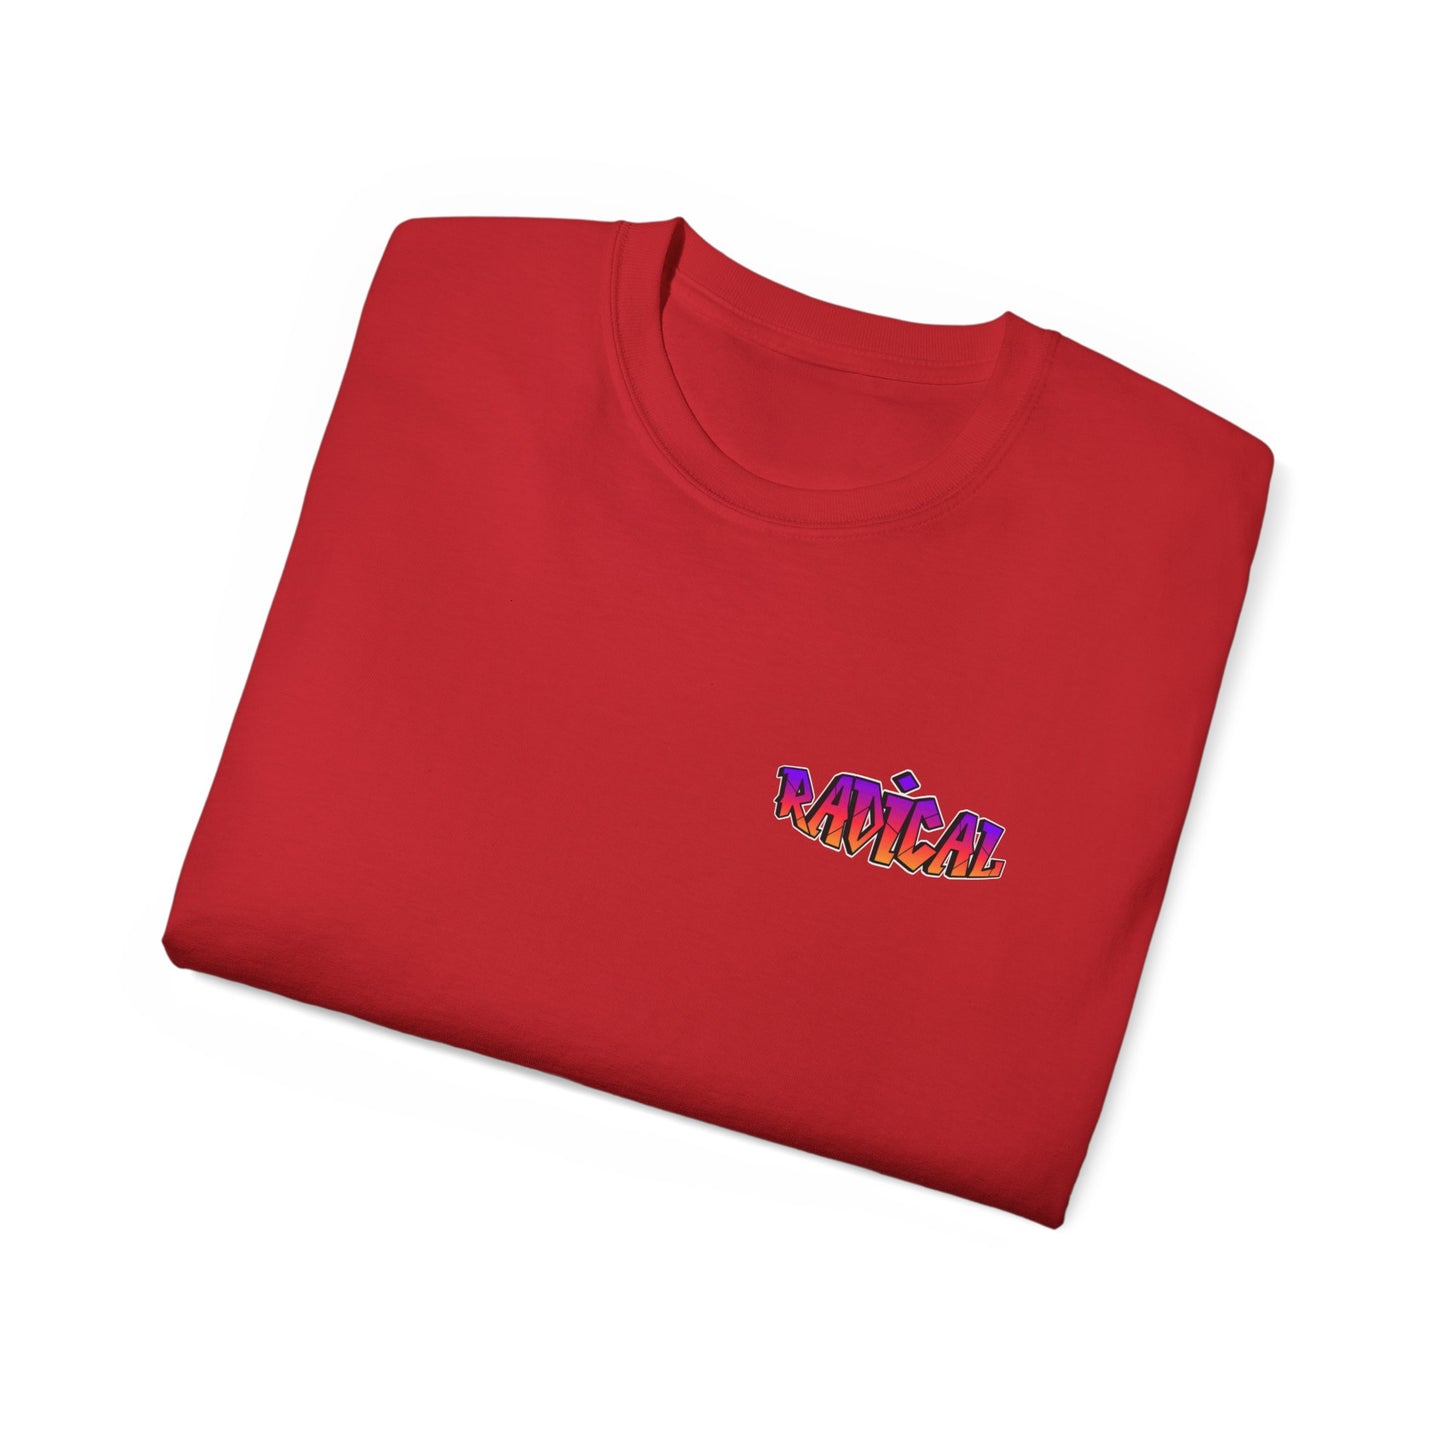 Unisex Ultra Cotton (Radical) T-shirt